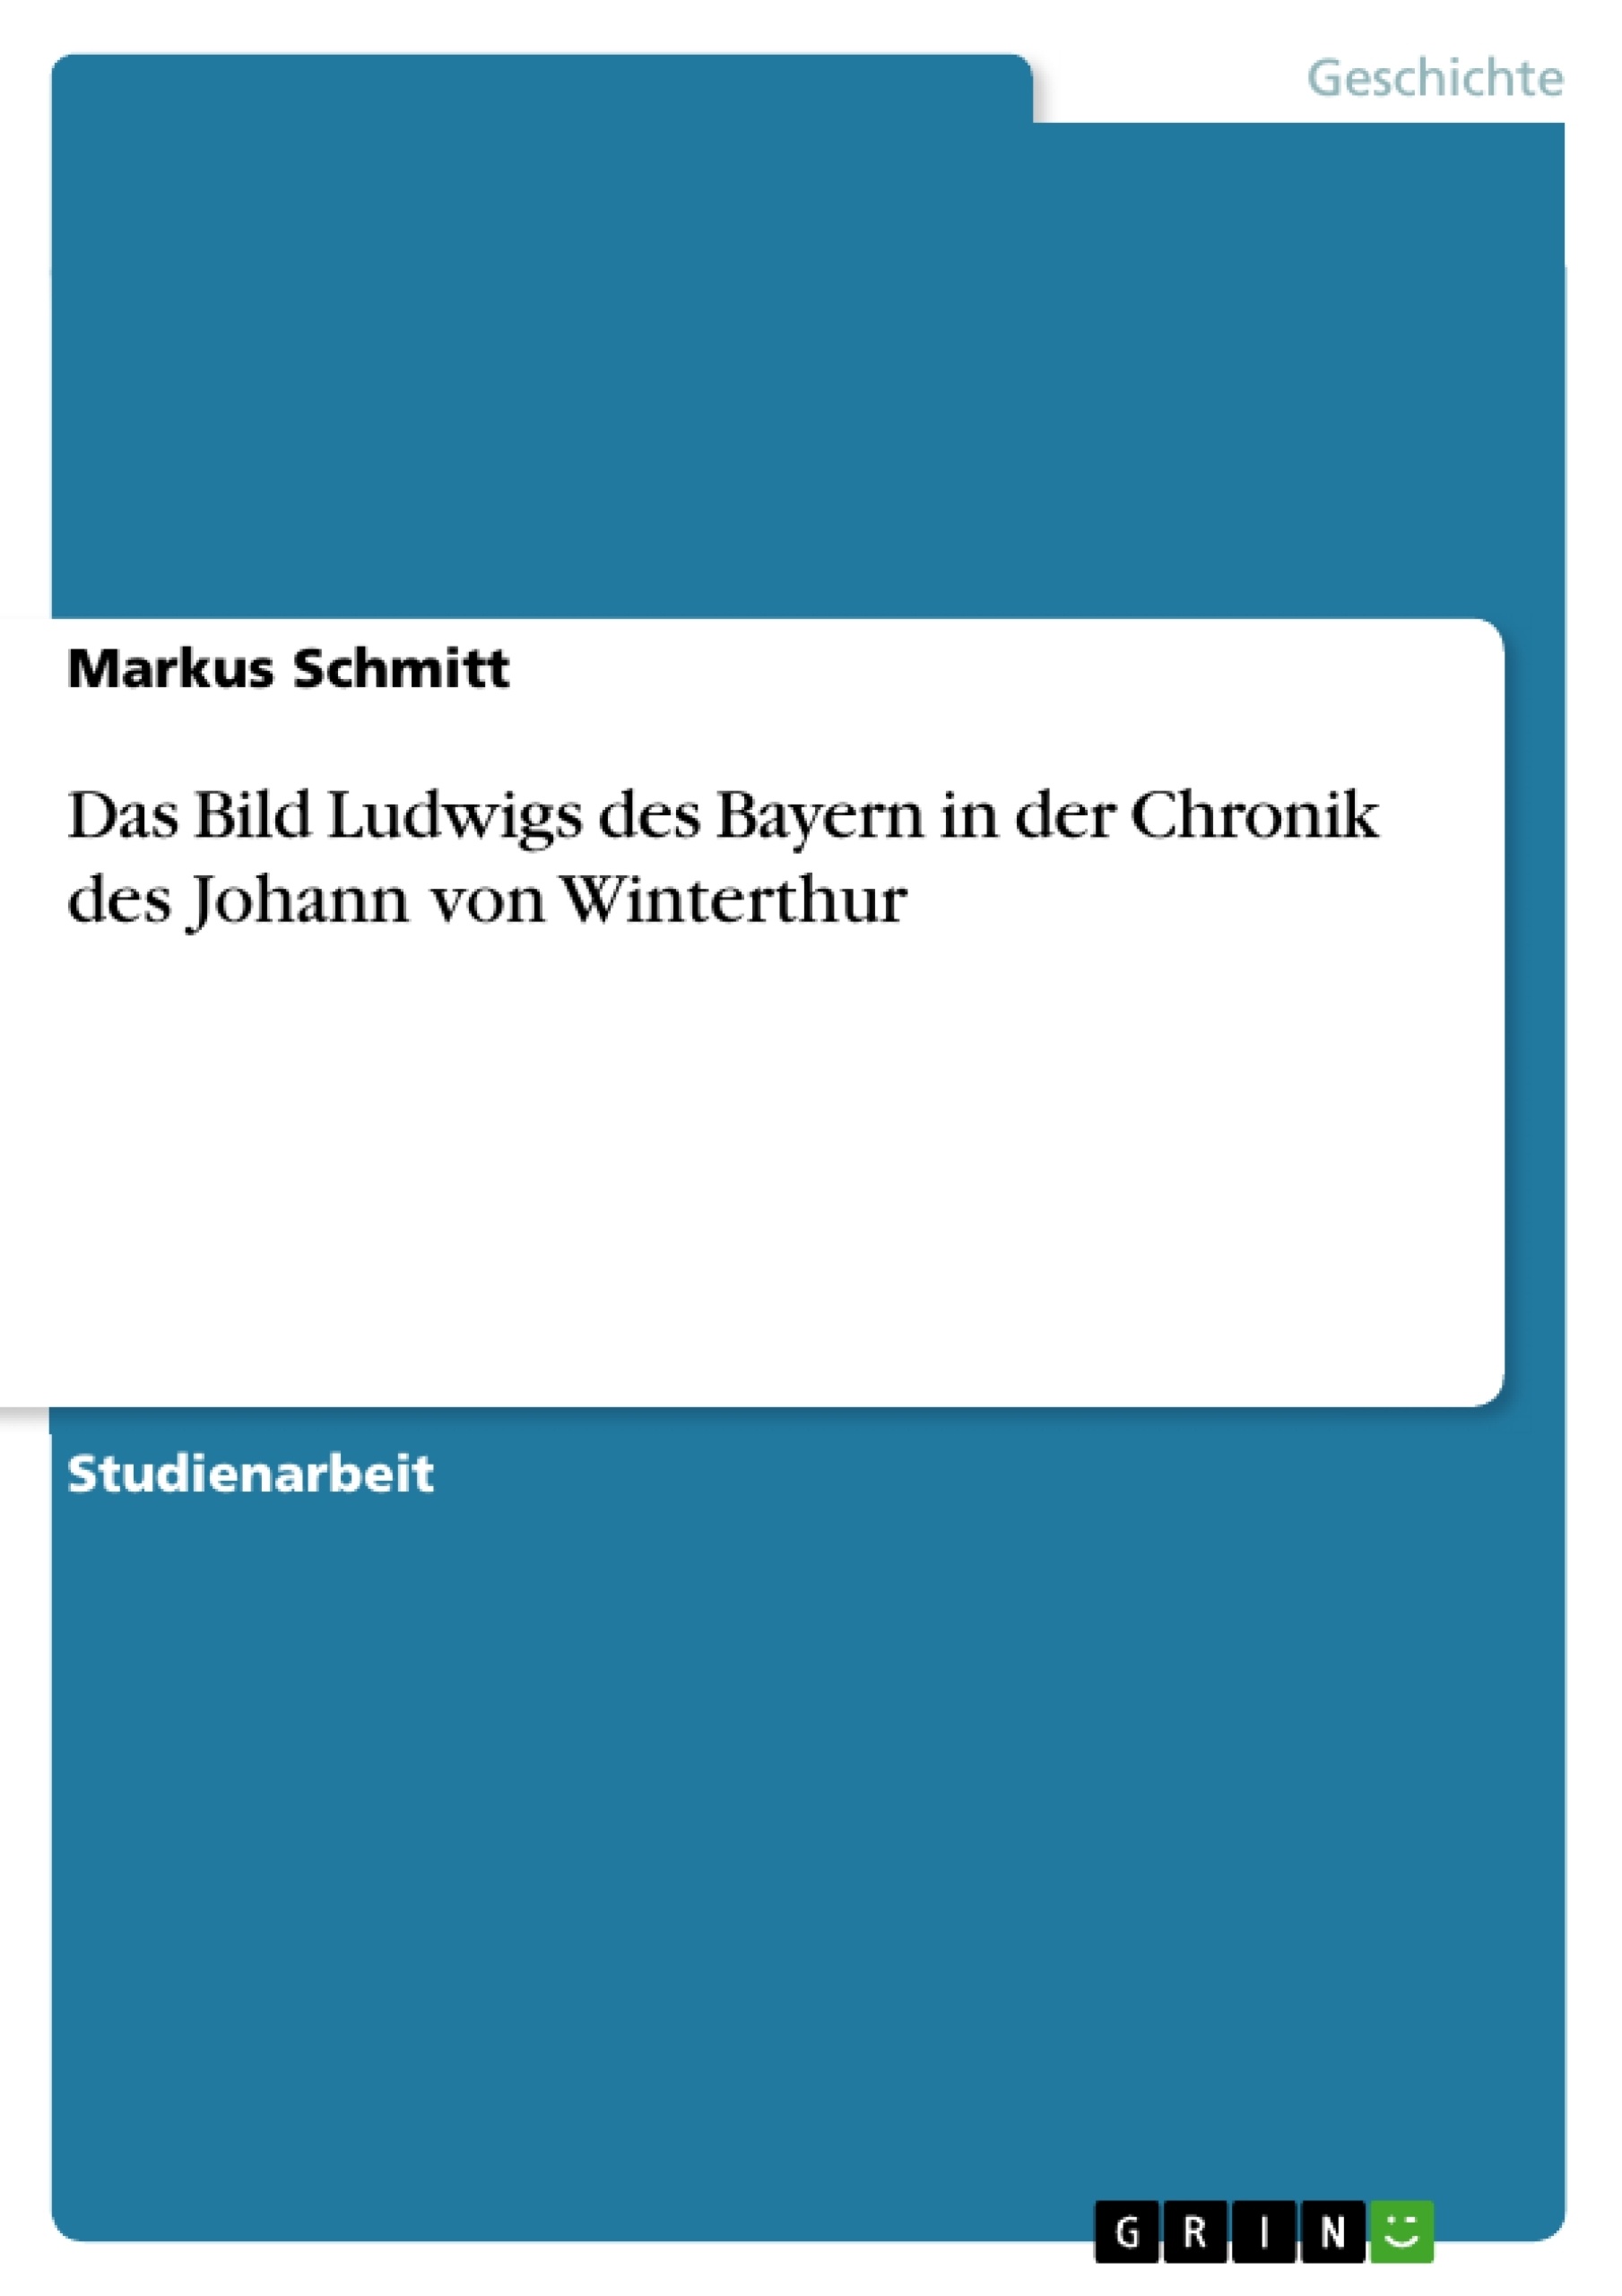 Título: Das Bild Ludwigs des Bayern in der Chronik des Johann von Winterthur